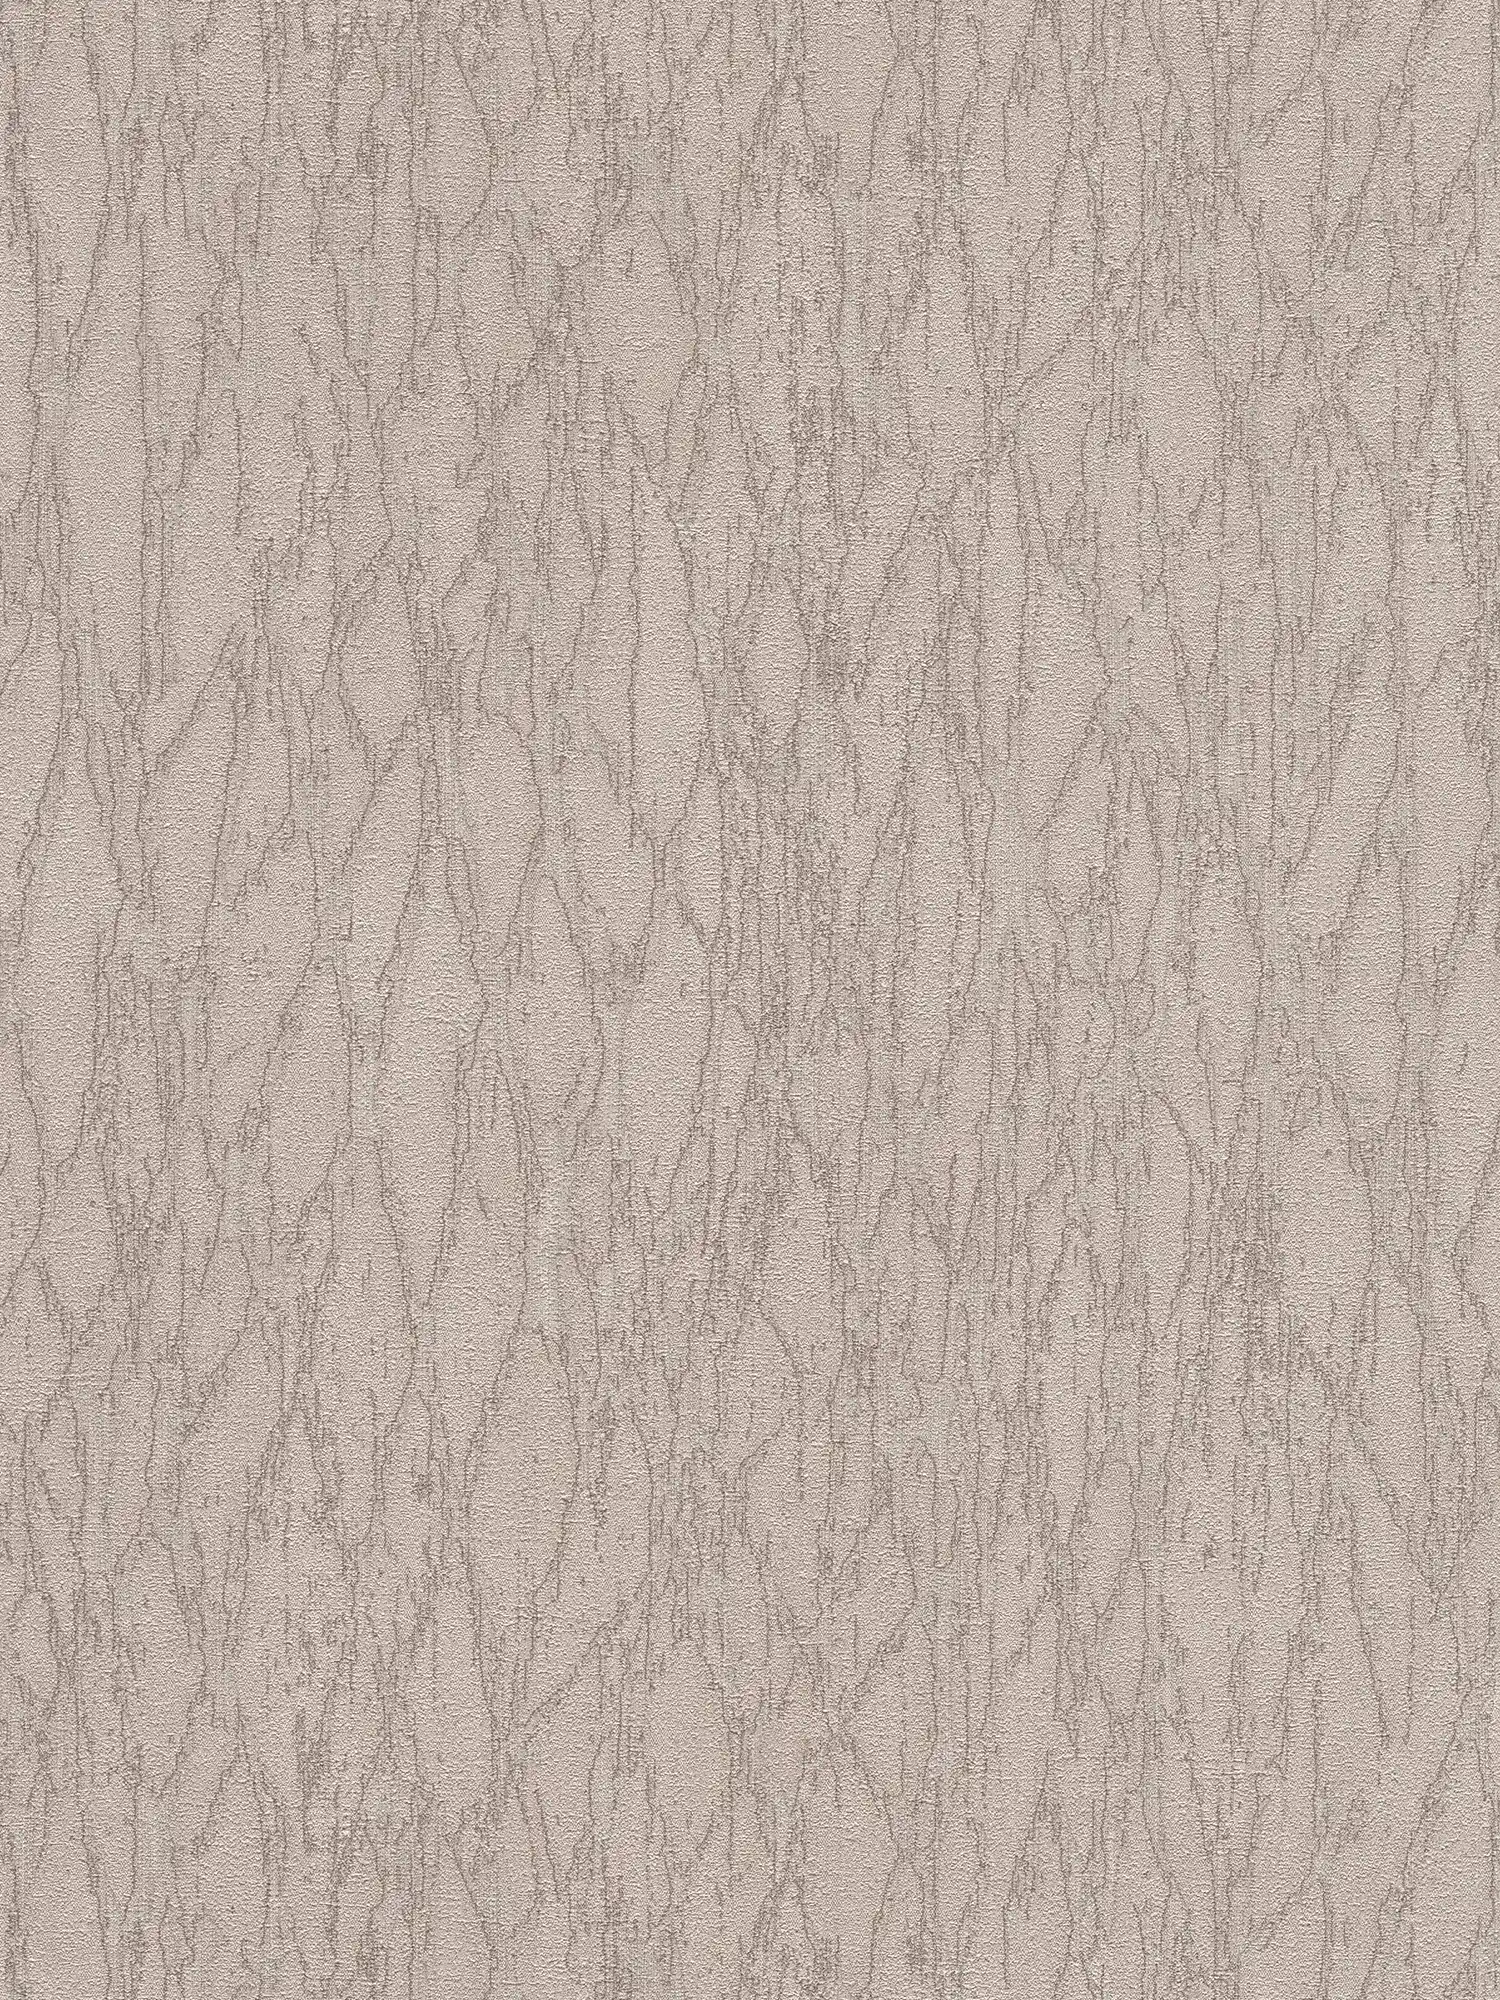 Vliesbehang in gipslook met accenten en abstract patroon - grijs, beige, zilver
